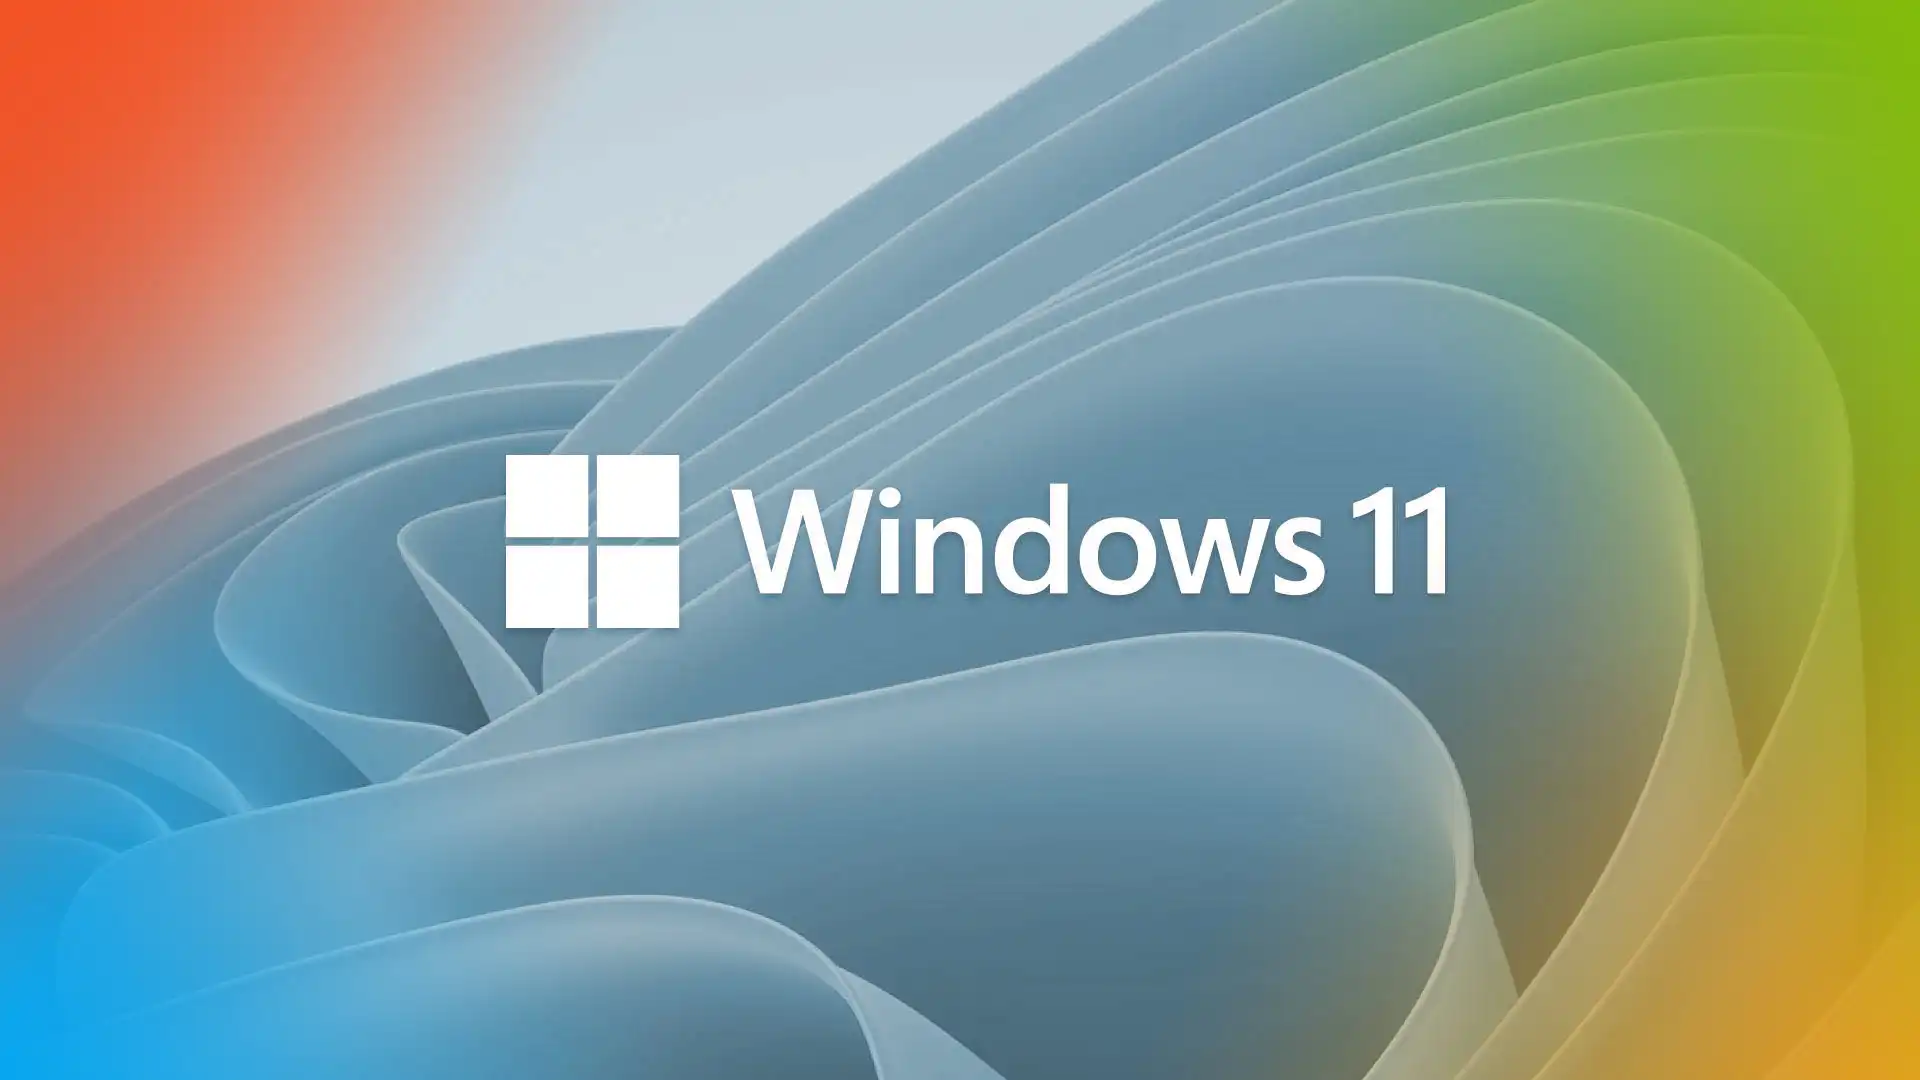 Microsoft’s Big Windows 11 Update Brings Major Changes